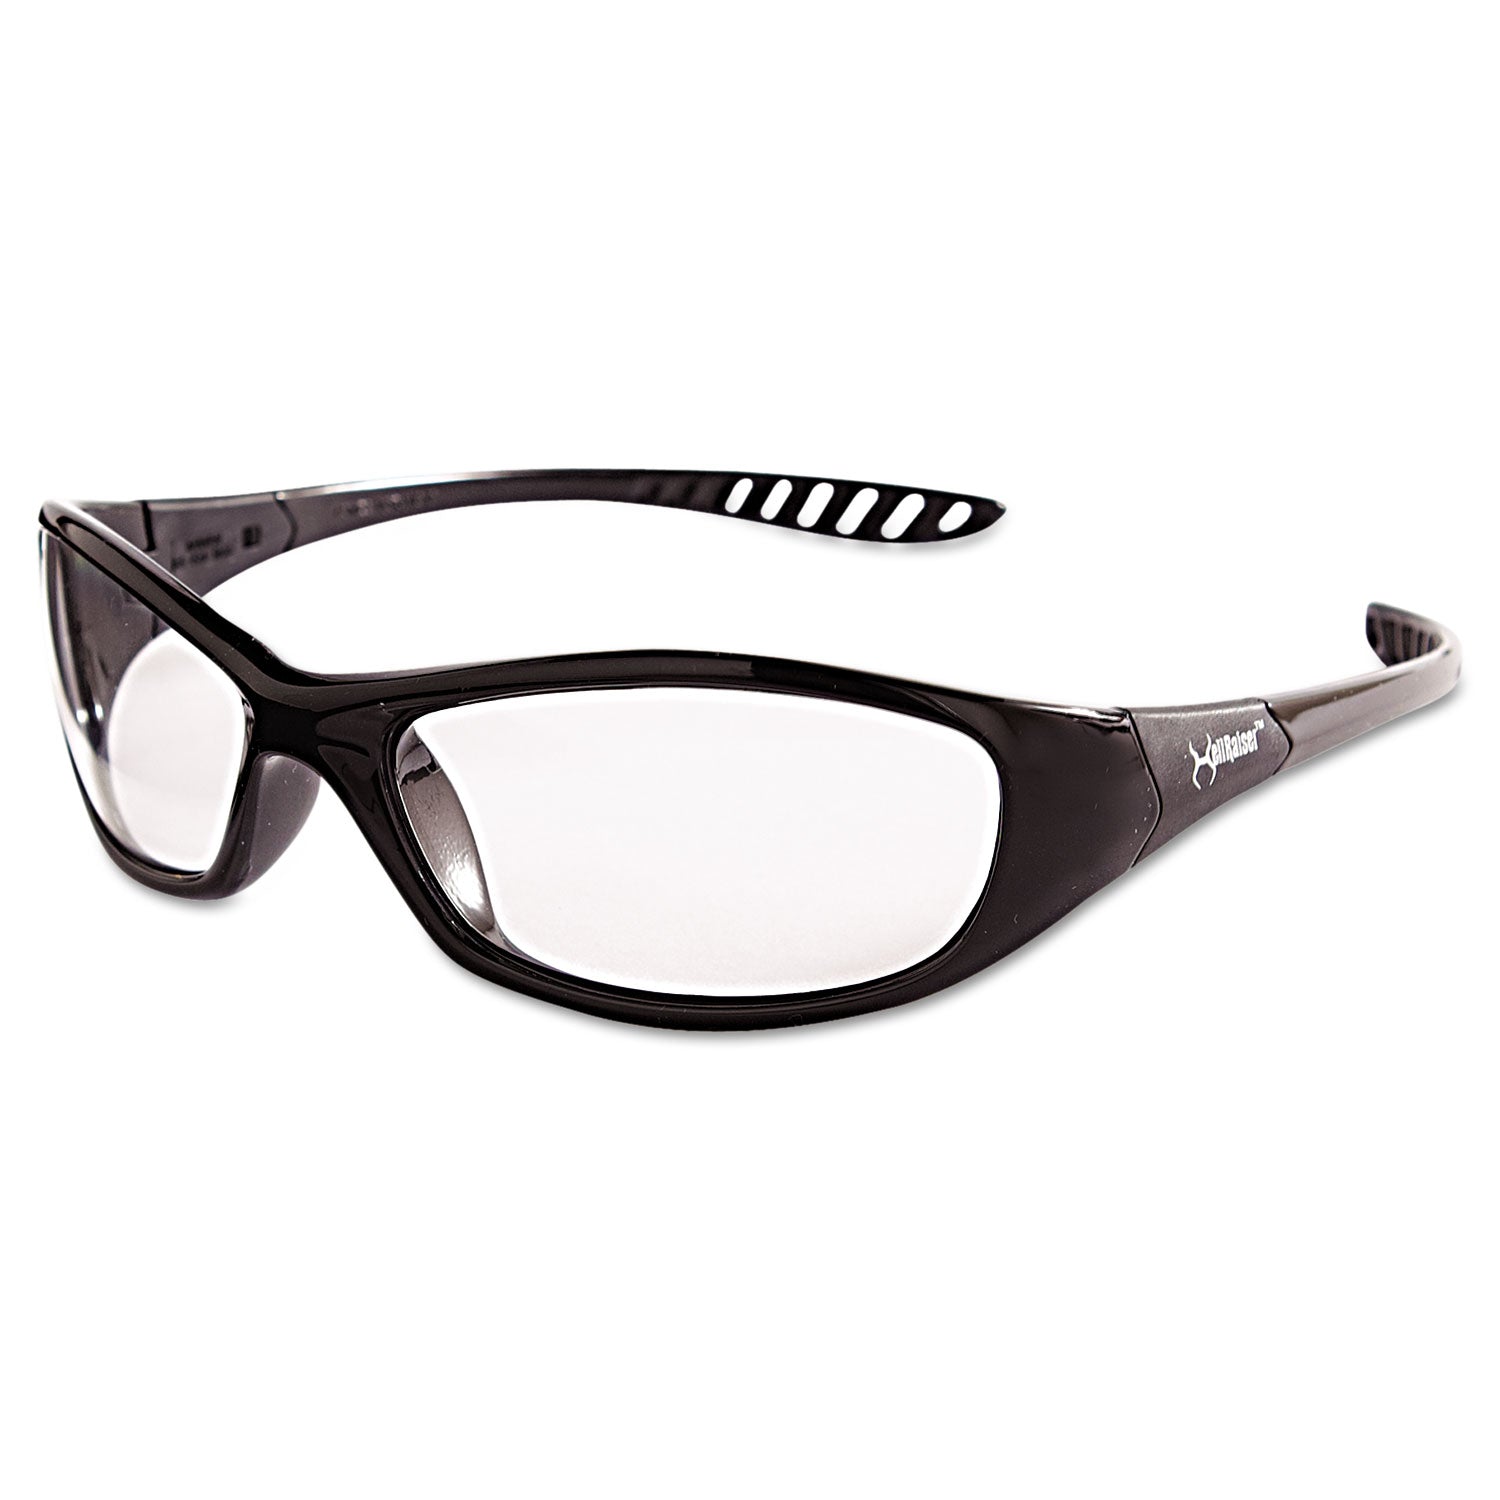 v40-hellraiser-safety-glasses-black-frame-clear-anti-fog-lens_kcc28615 - 2